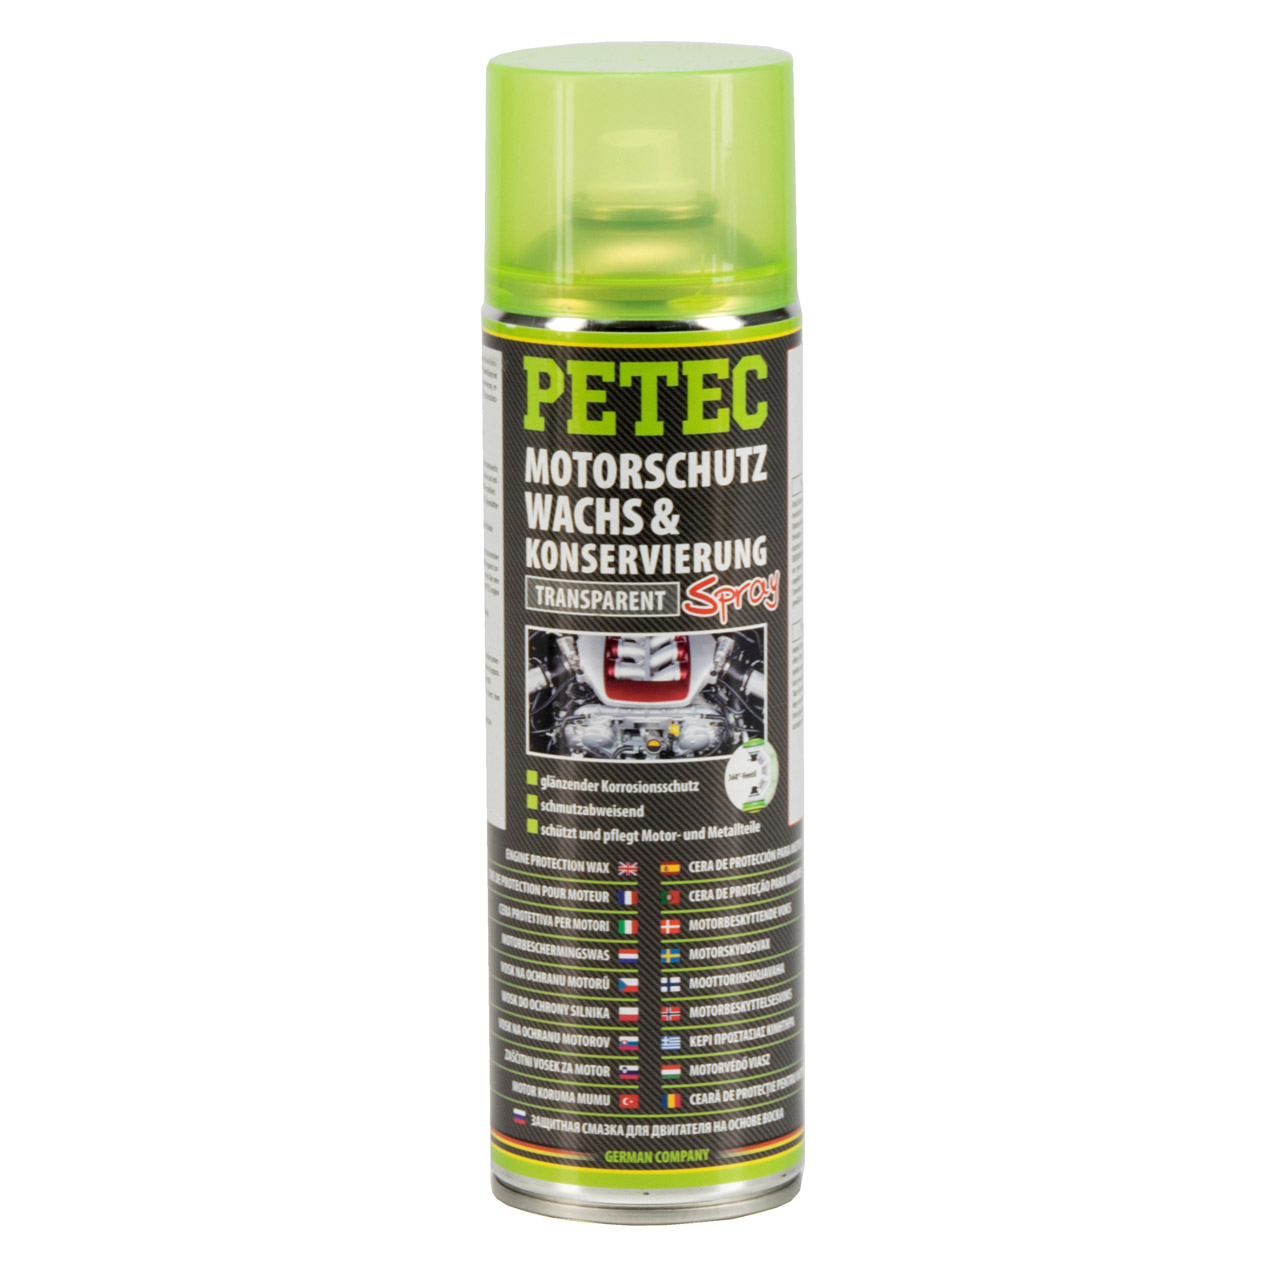 PETEC 73430 Motorschutz Wachs & Konservierung Motorraumkonservierung Spray 500ml